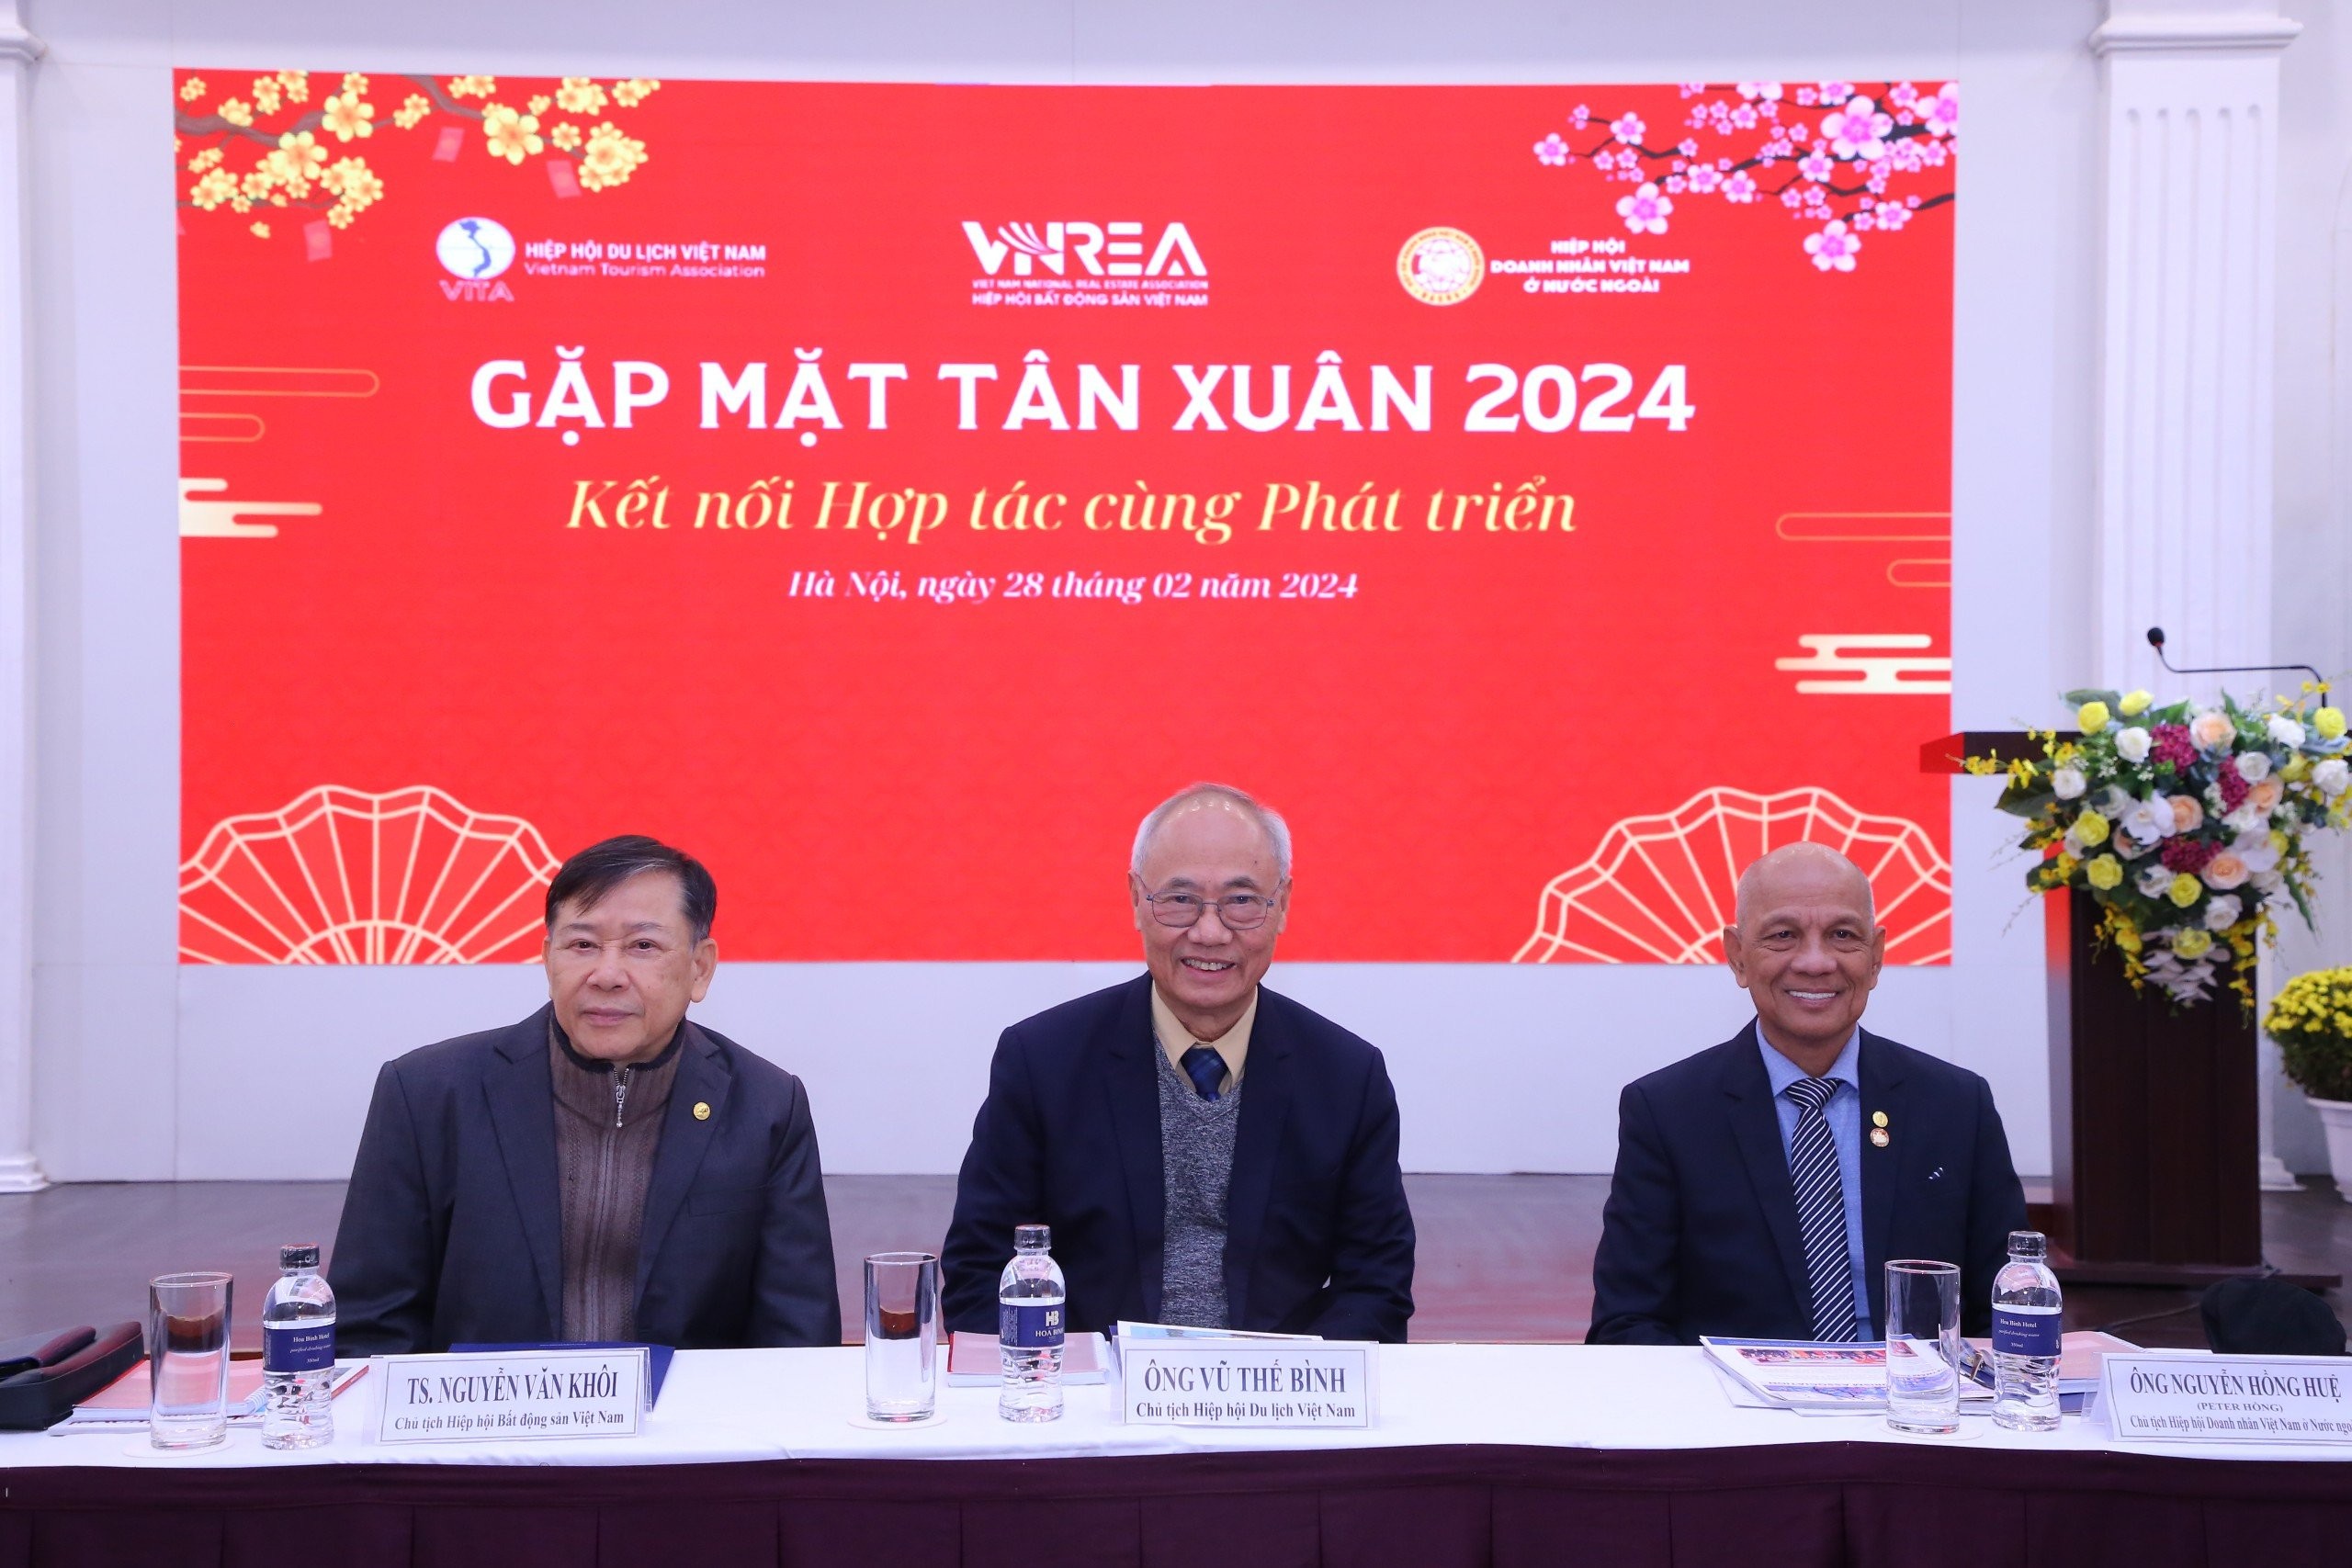 Gặp mặt tân xuân giữa Hiệp hội Du lịch Việt Nam, Hiệp hội Bất động sản Việt Nam và Hiệp hội Doanh nhân Việt Nam ở nước ngoài